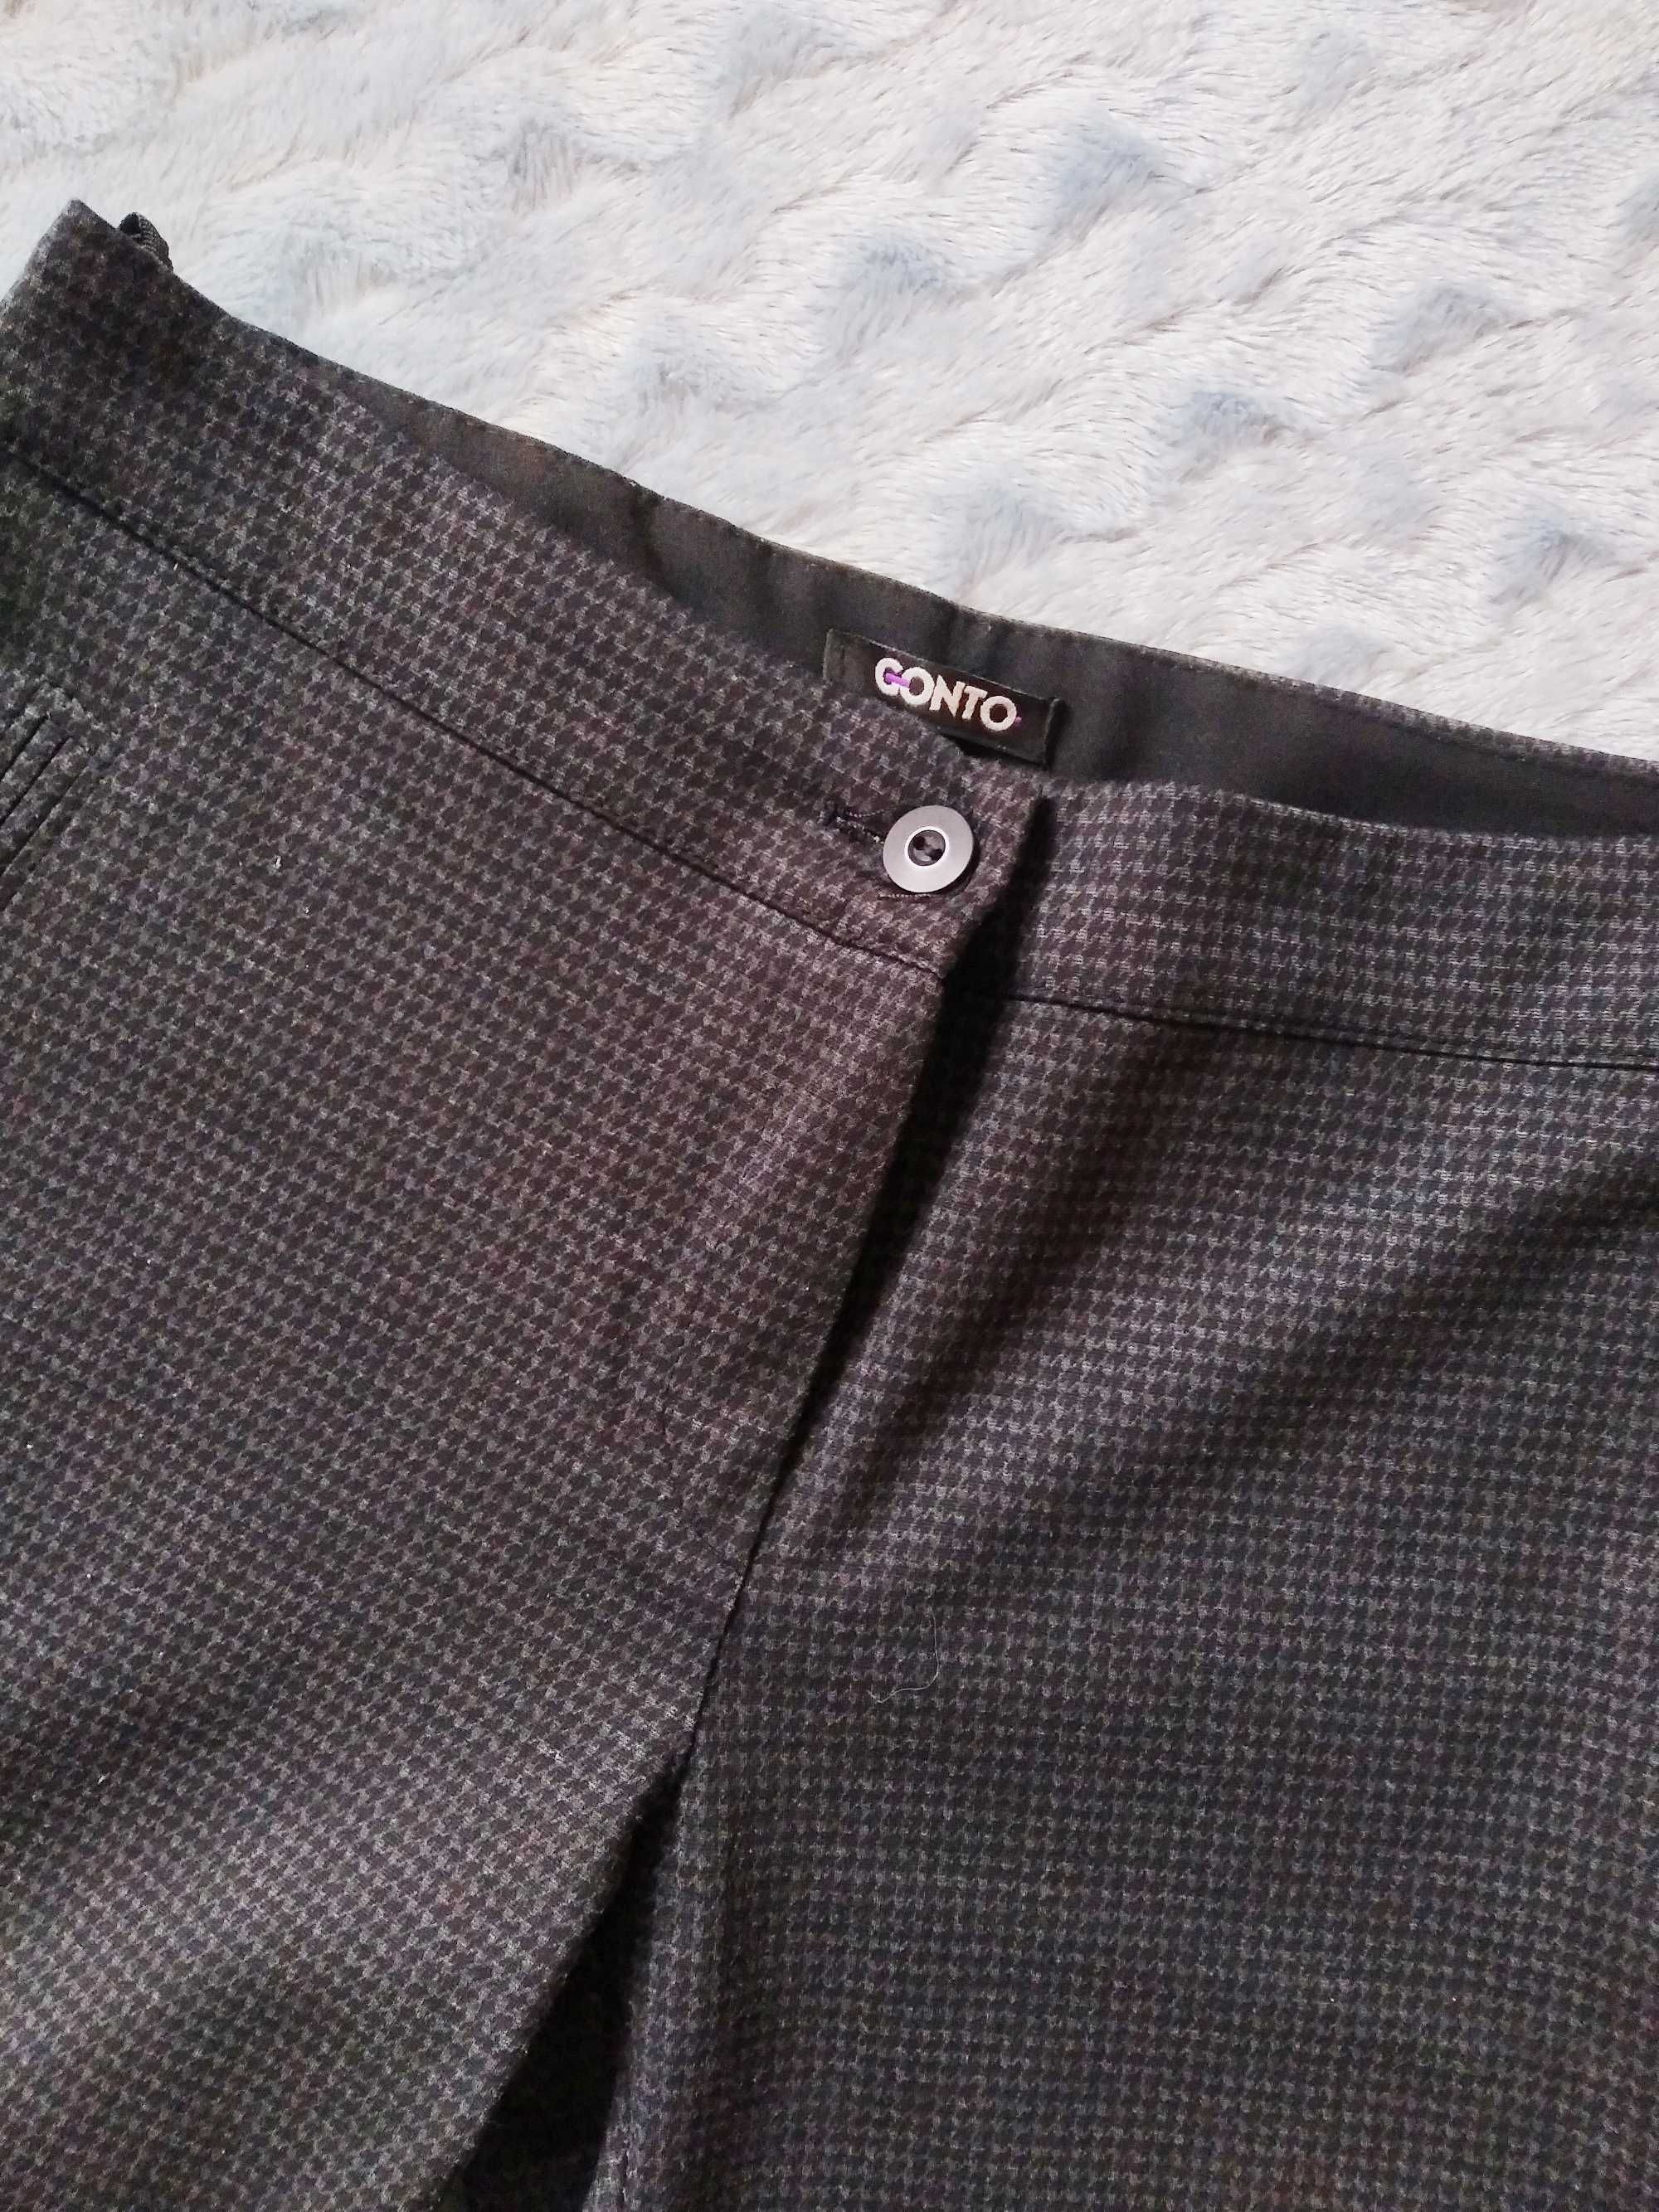 4. Spodnie czarne w pepitke r. 42